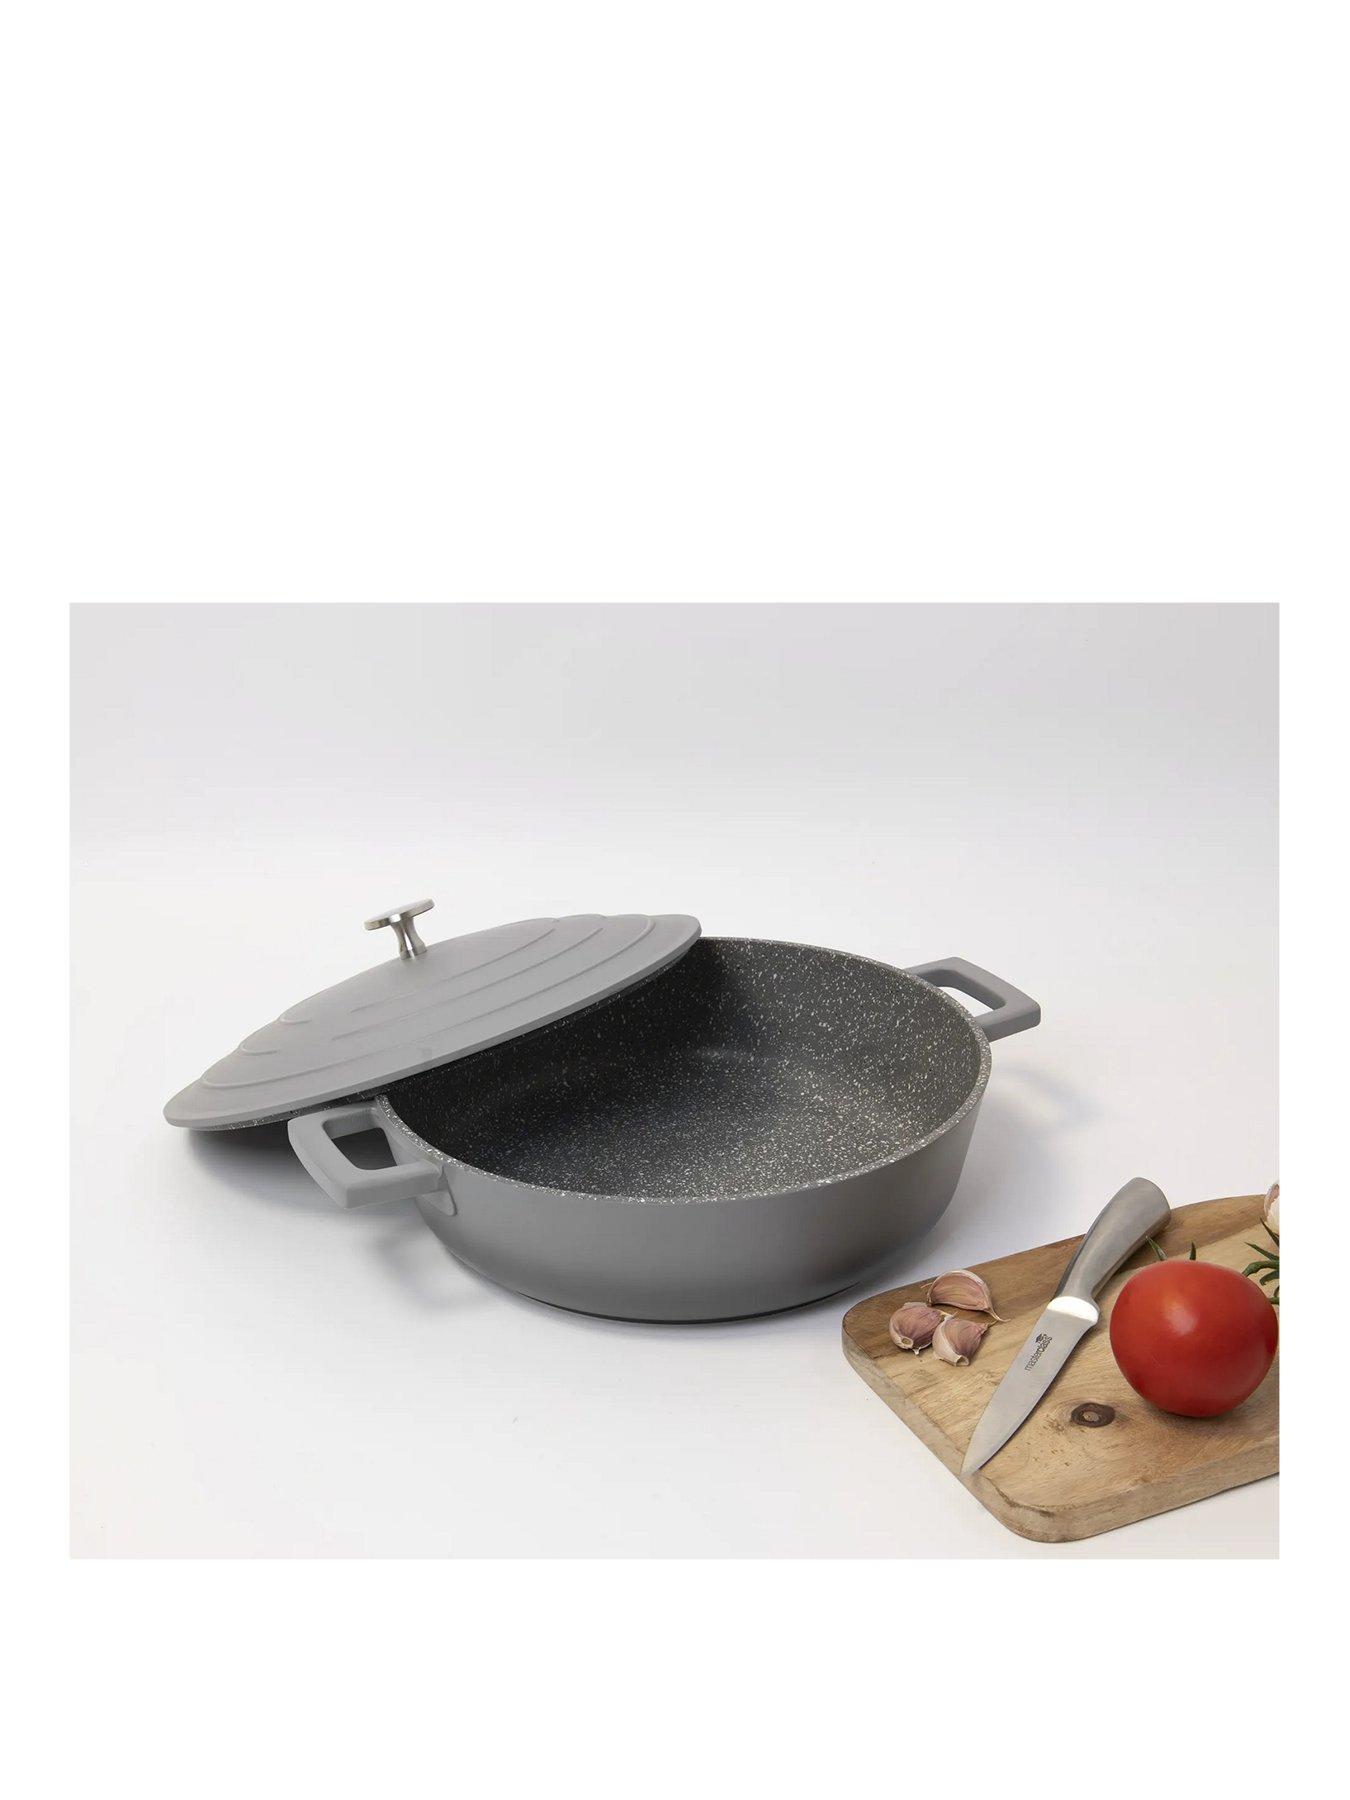  MasterClass Cast Aluminium Induction-Safe Non-Stick Griddle Pan,  28 cm (11), Grey : Home & Kitchen